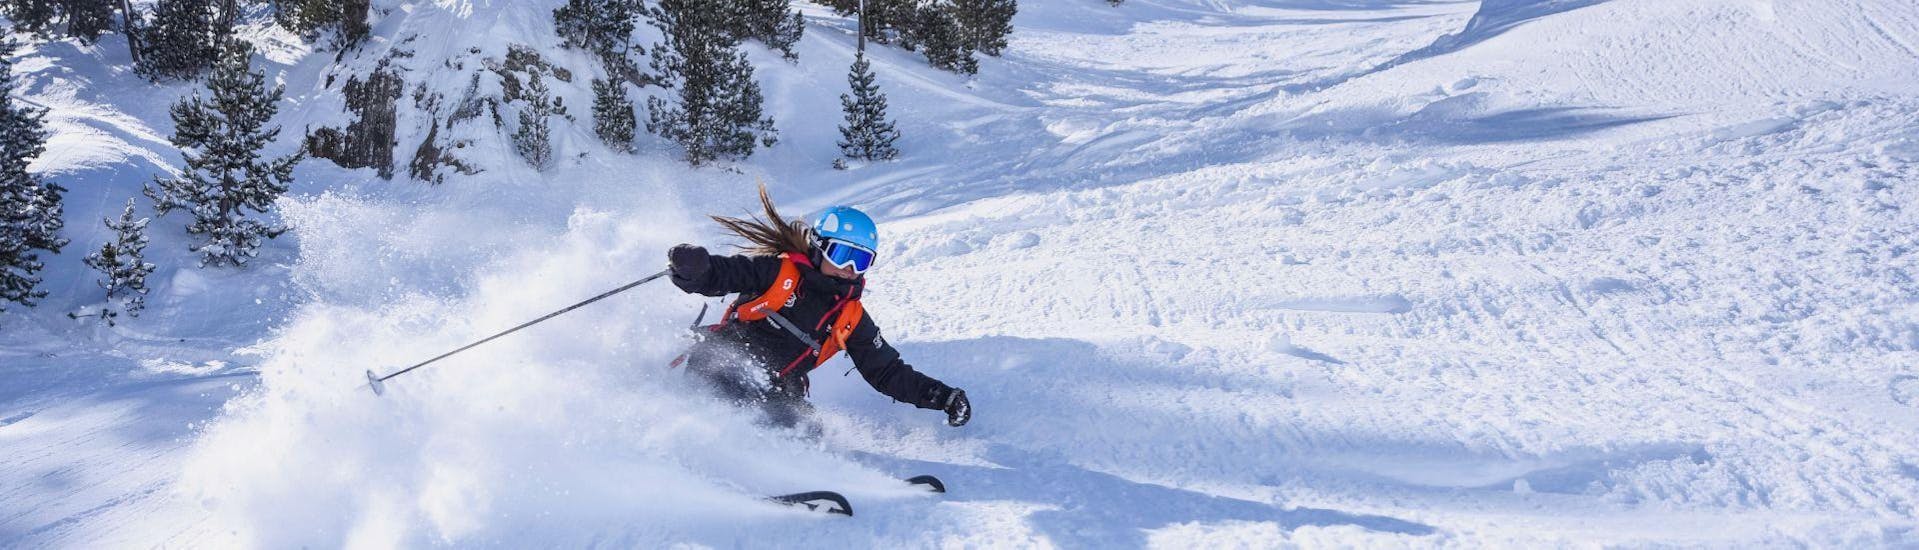 Un moniteur de ski de l'école de ski Sierra Nevada descend les pistes avec élégance et sportivité pendant les cours particuliers de ski pour adultes - tous niveaux.